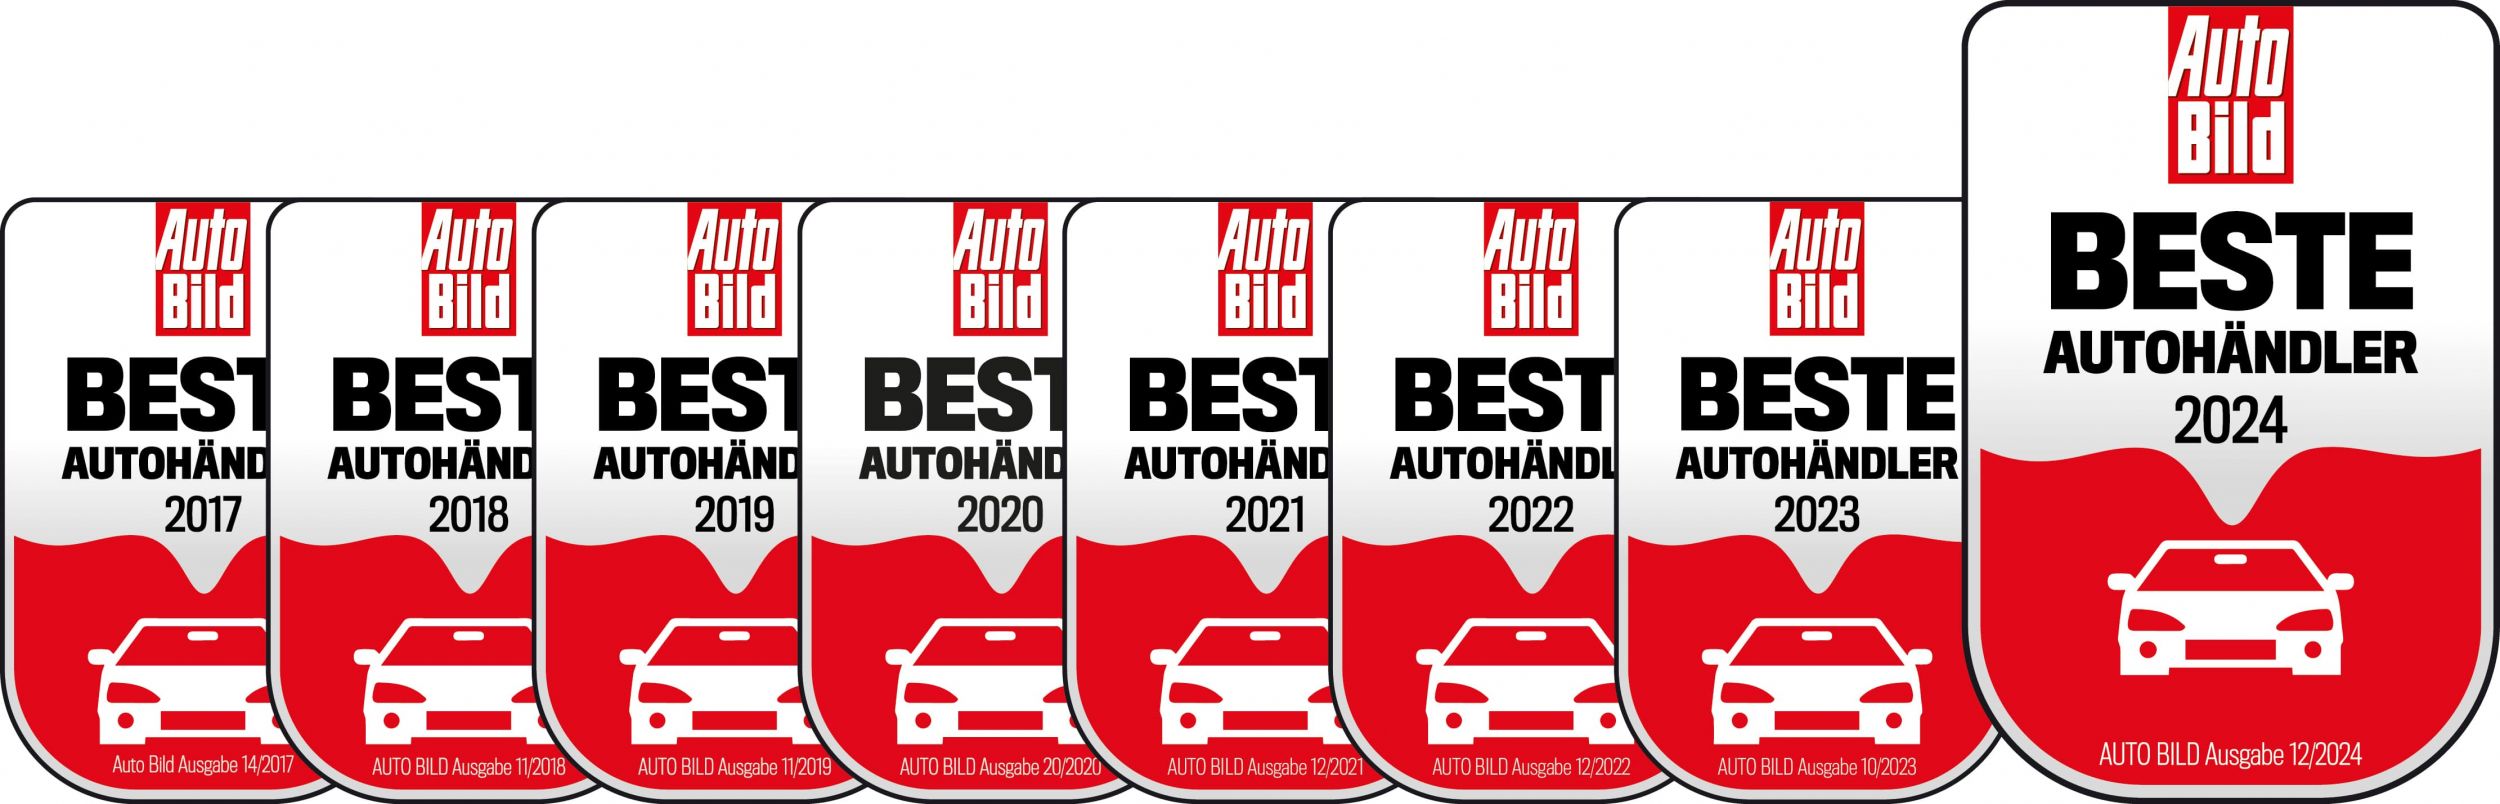 Auto Bild - Beste Autohändler 2024